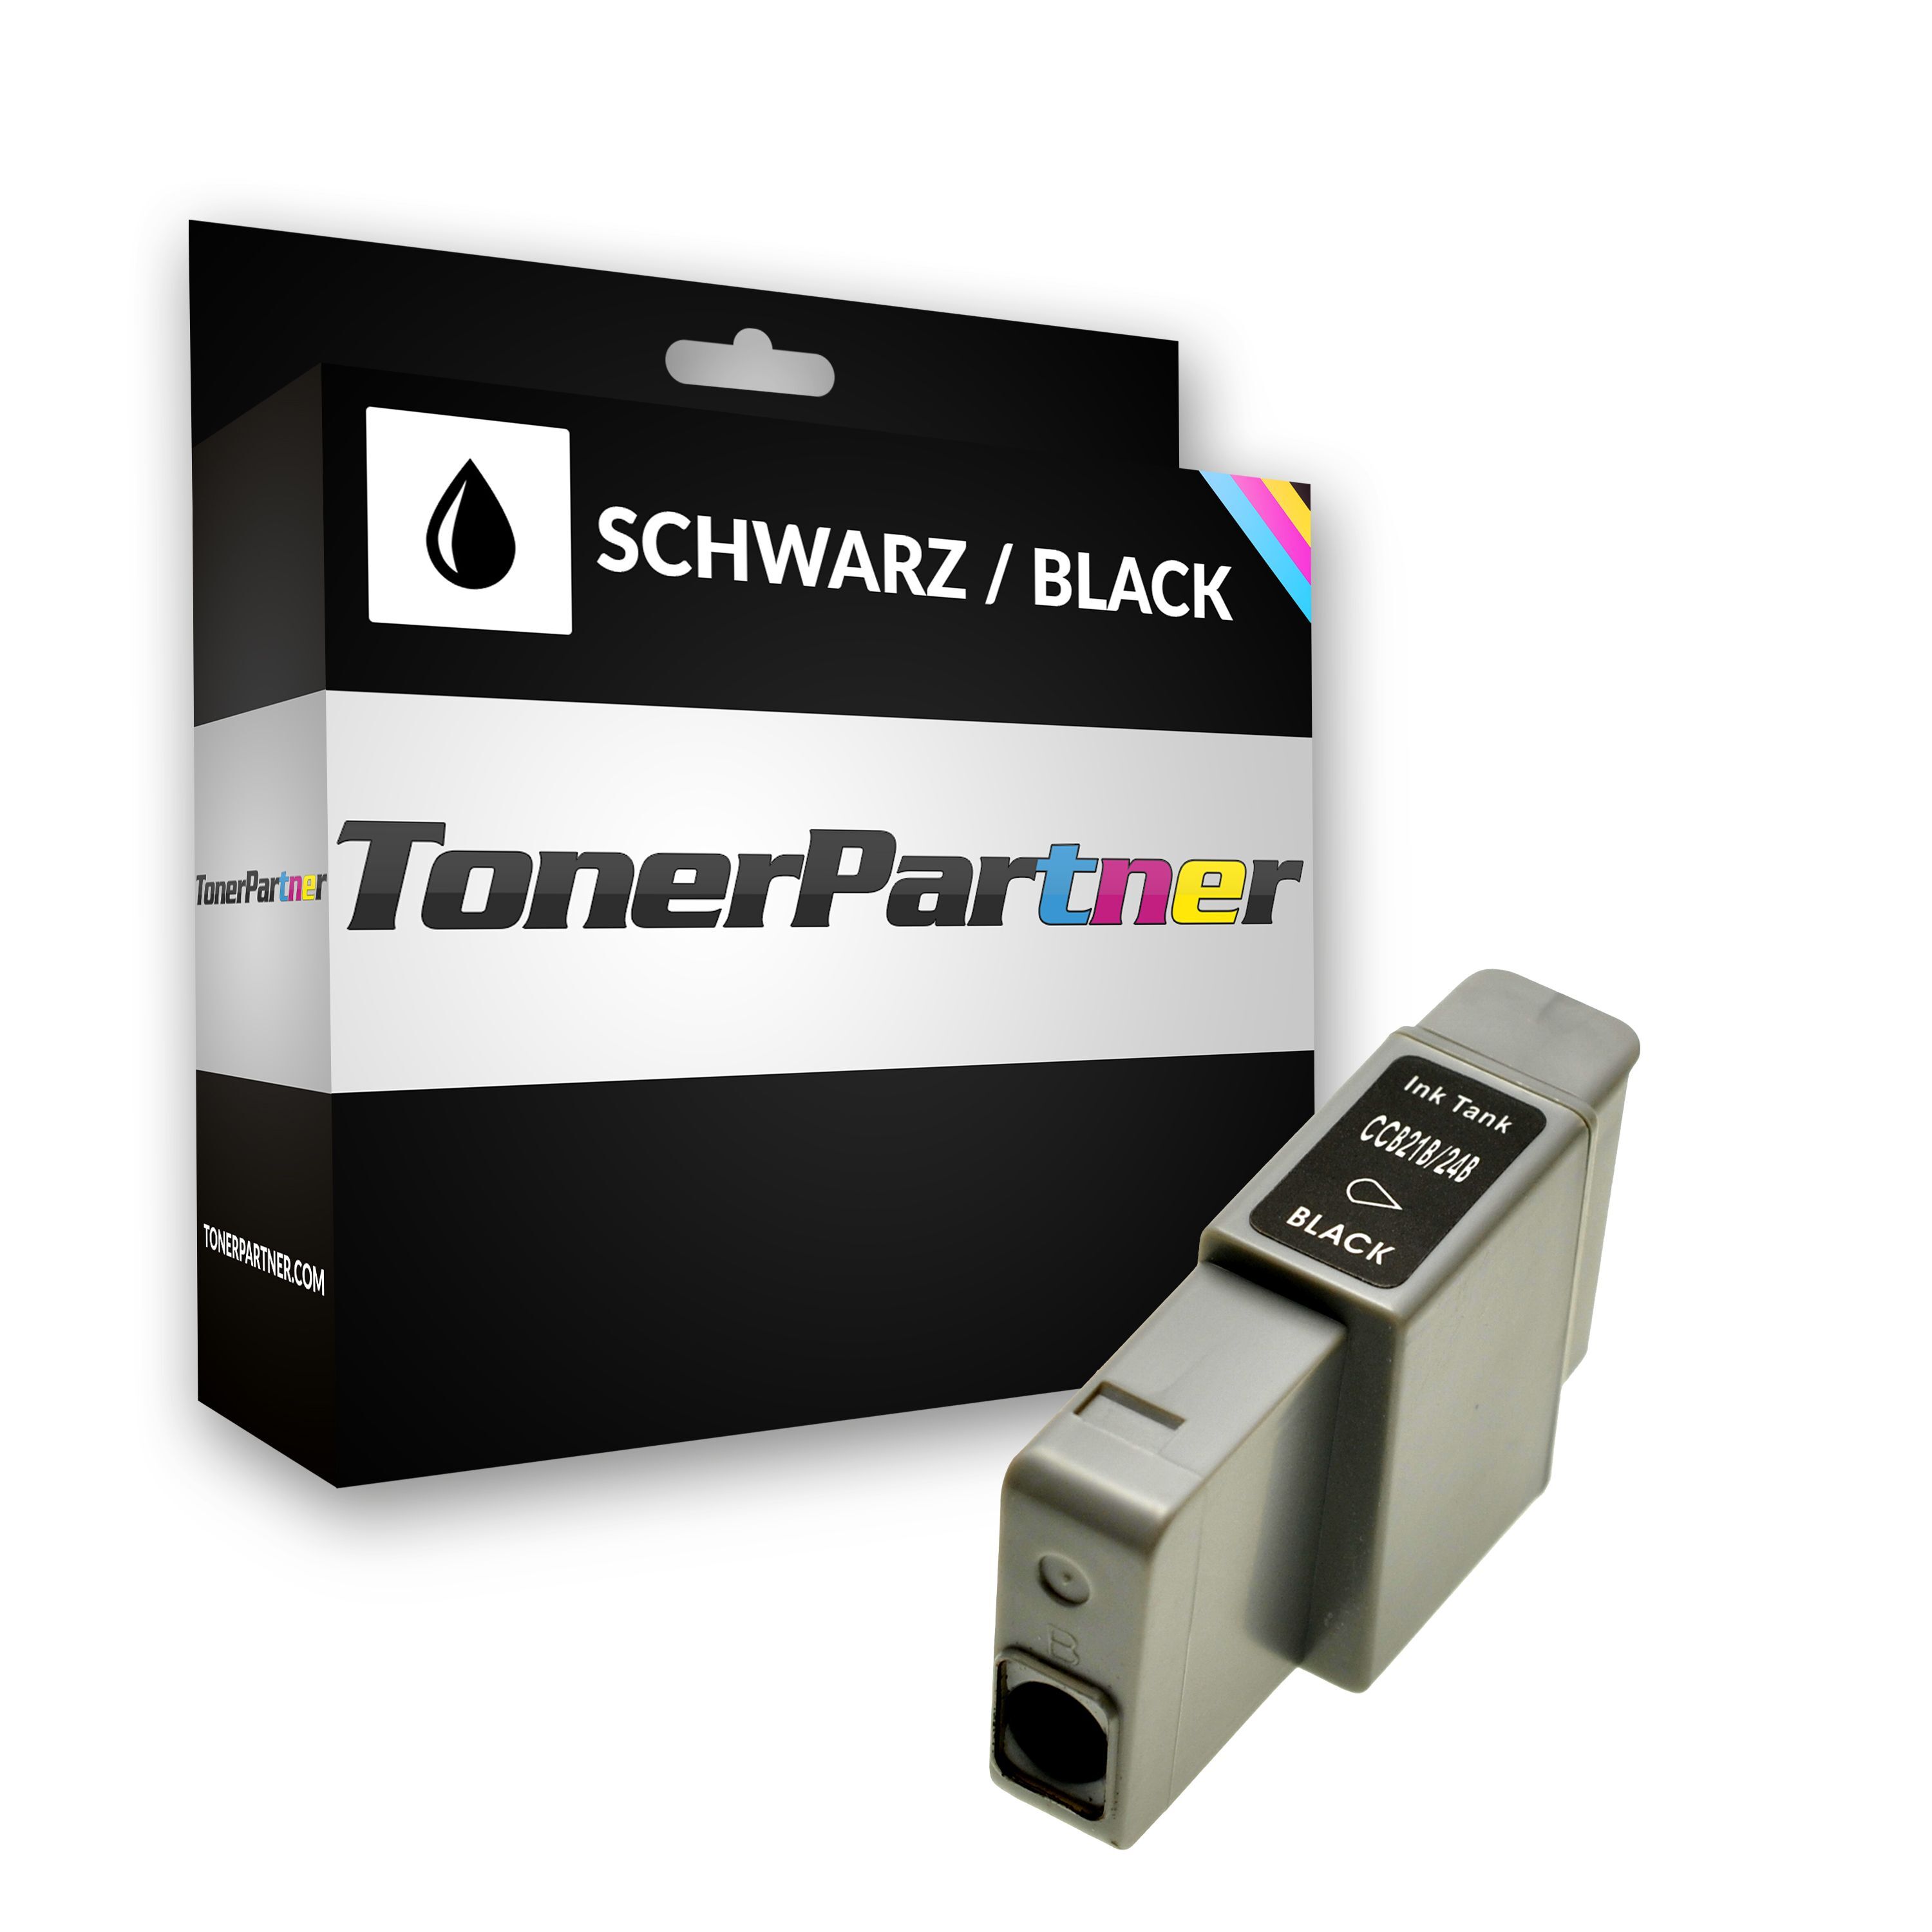 TonerPartner Kompatibel zu Canon BJC 4000 E Tintenpatrone (BCI-21 BK / 0954 A 002) schwarz, 240 Seiten, 1,44 Rp pro Seite, Inhalt: 9 ml von TonerPartner